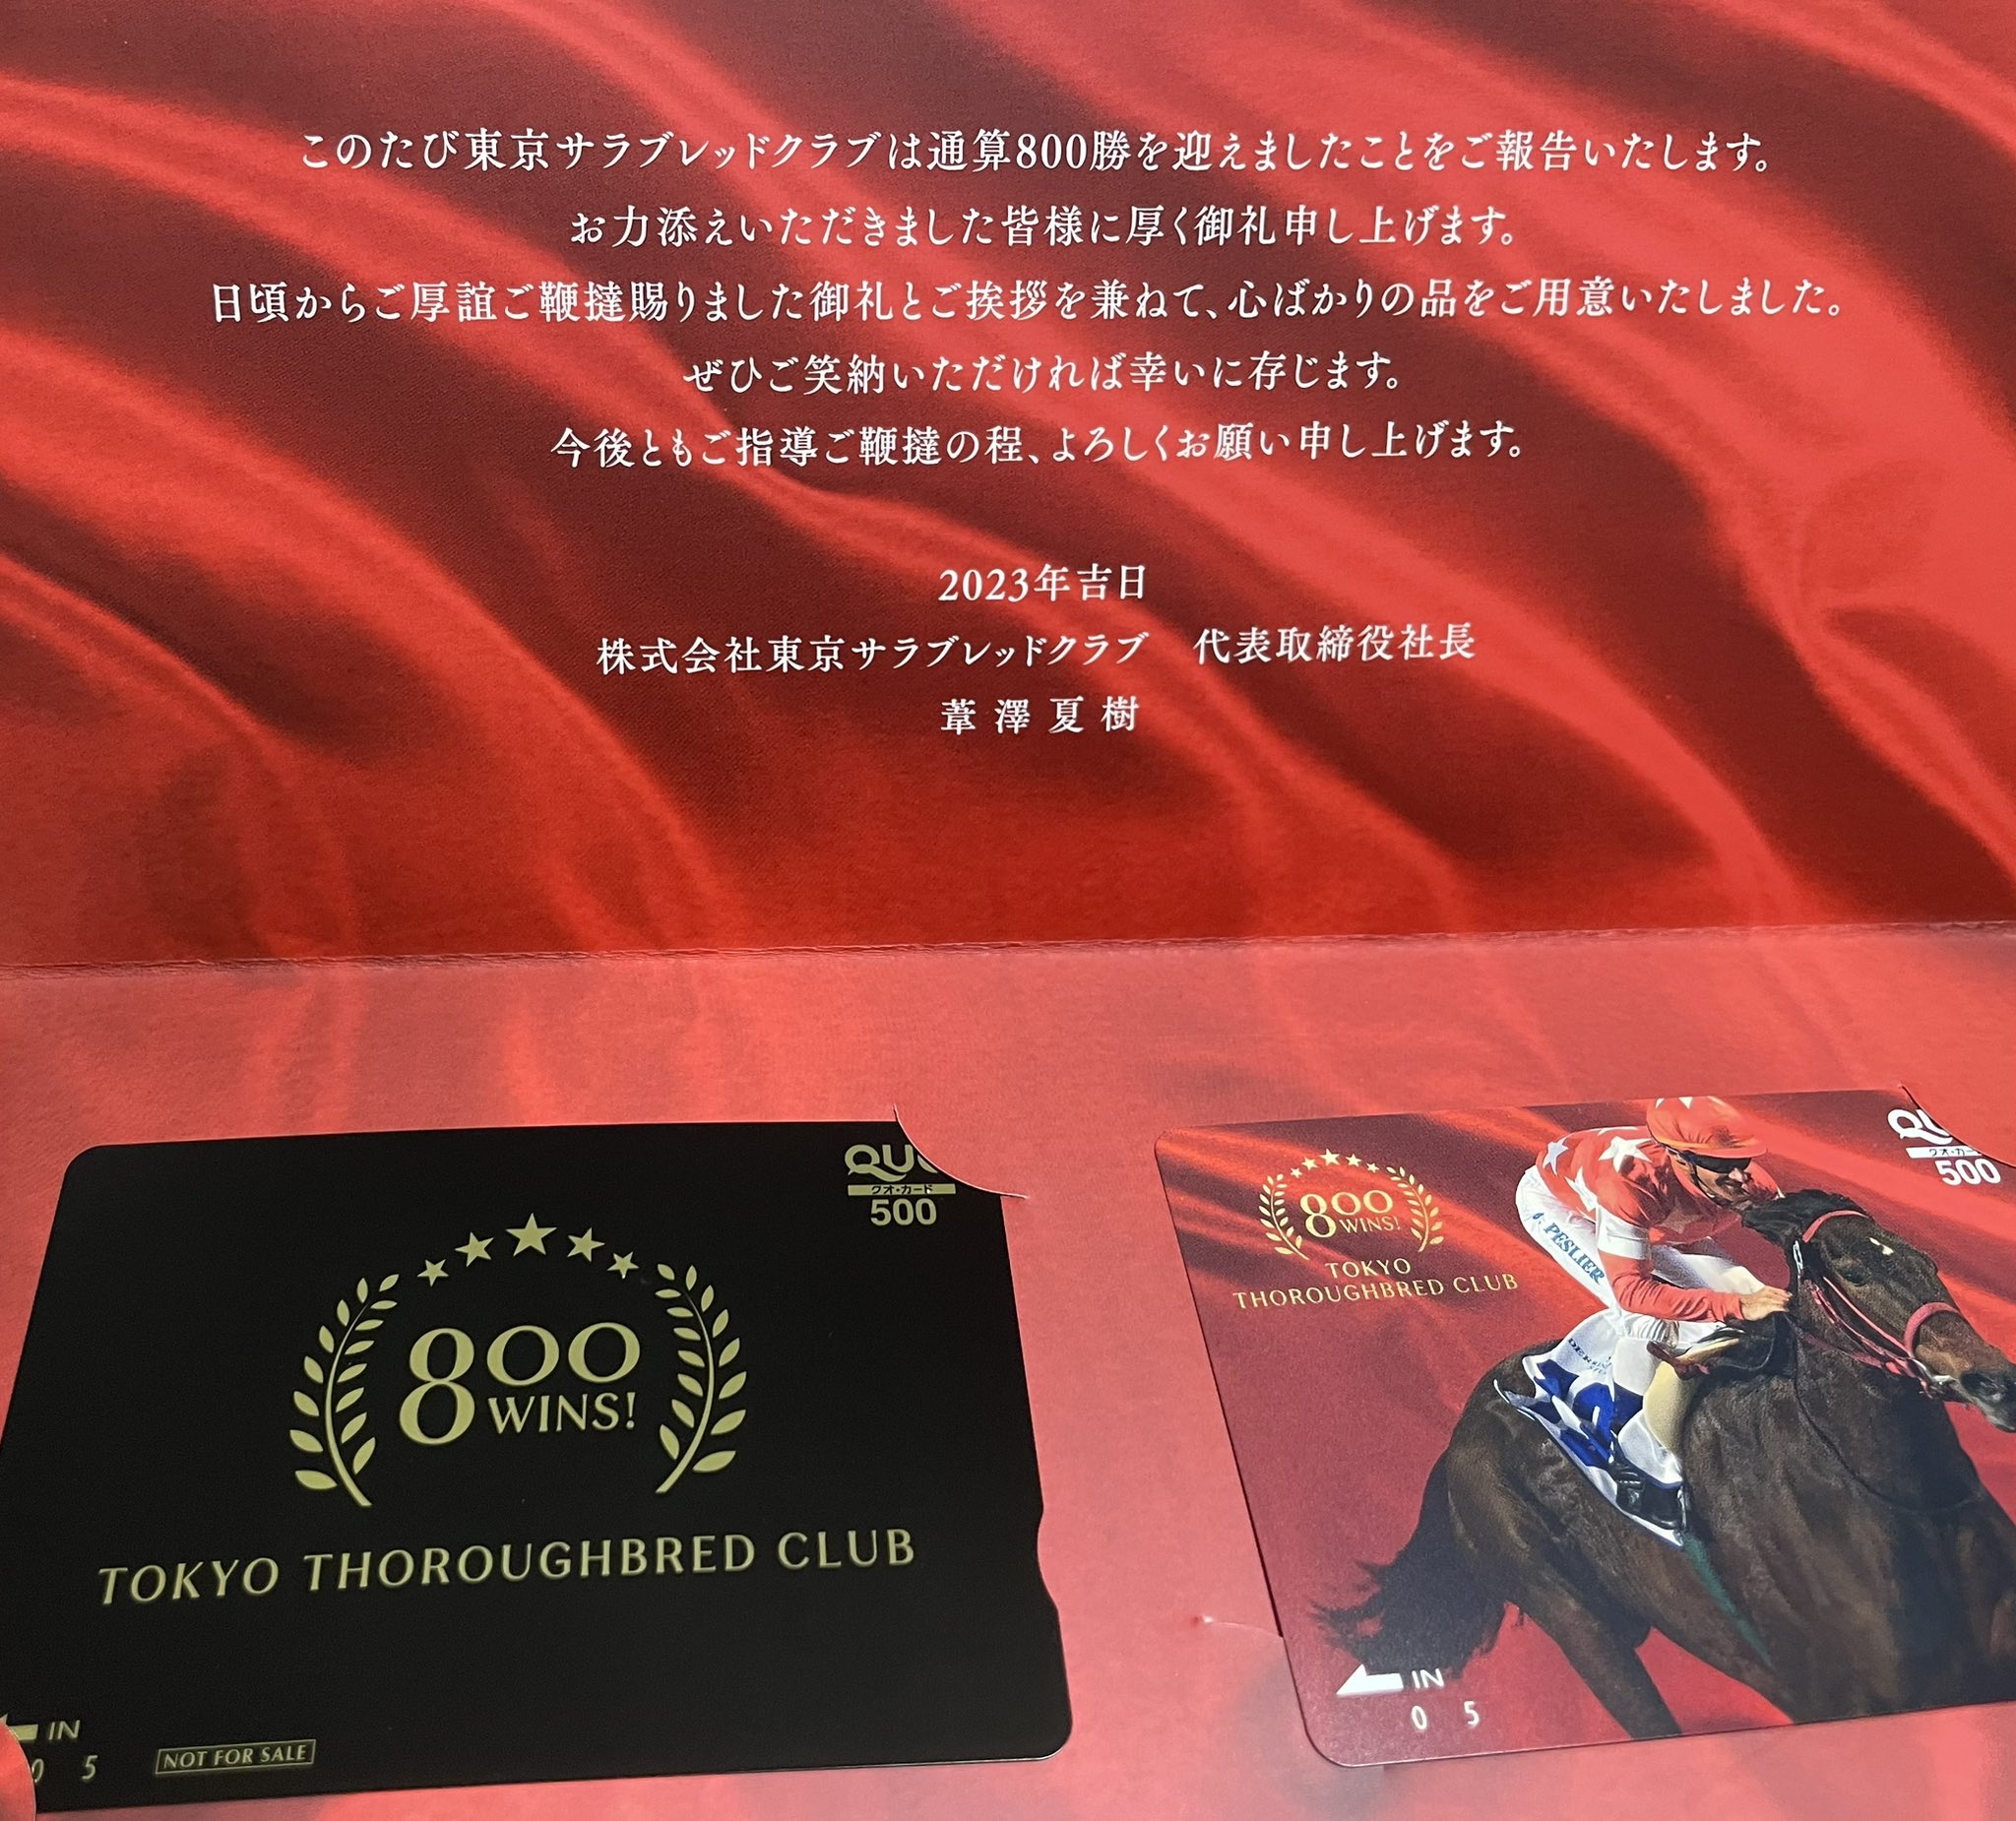 東京サラブレッドクラブ 800勝記念QUOカードが届く